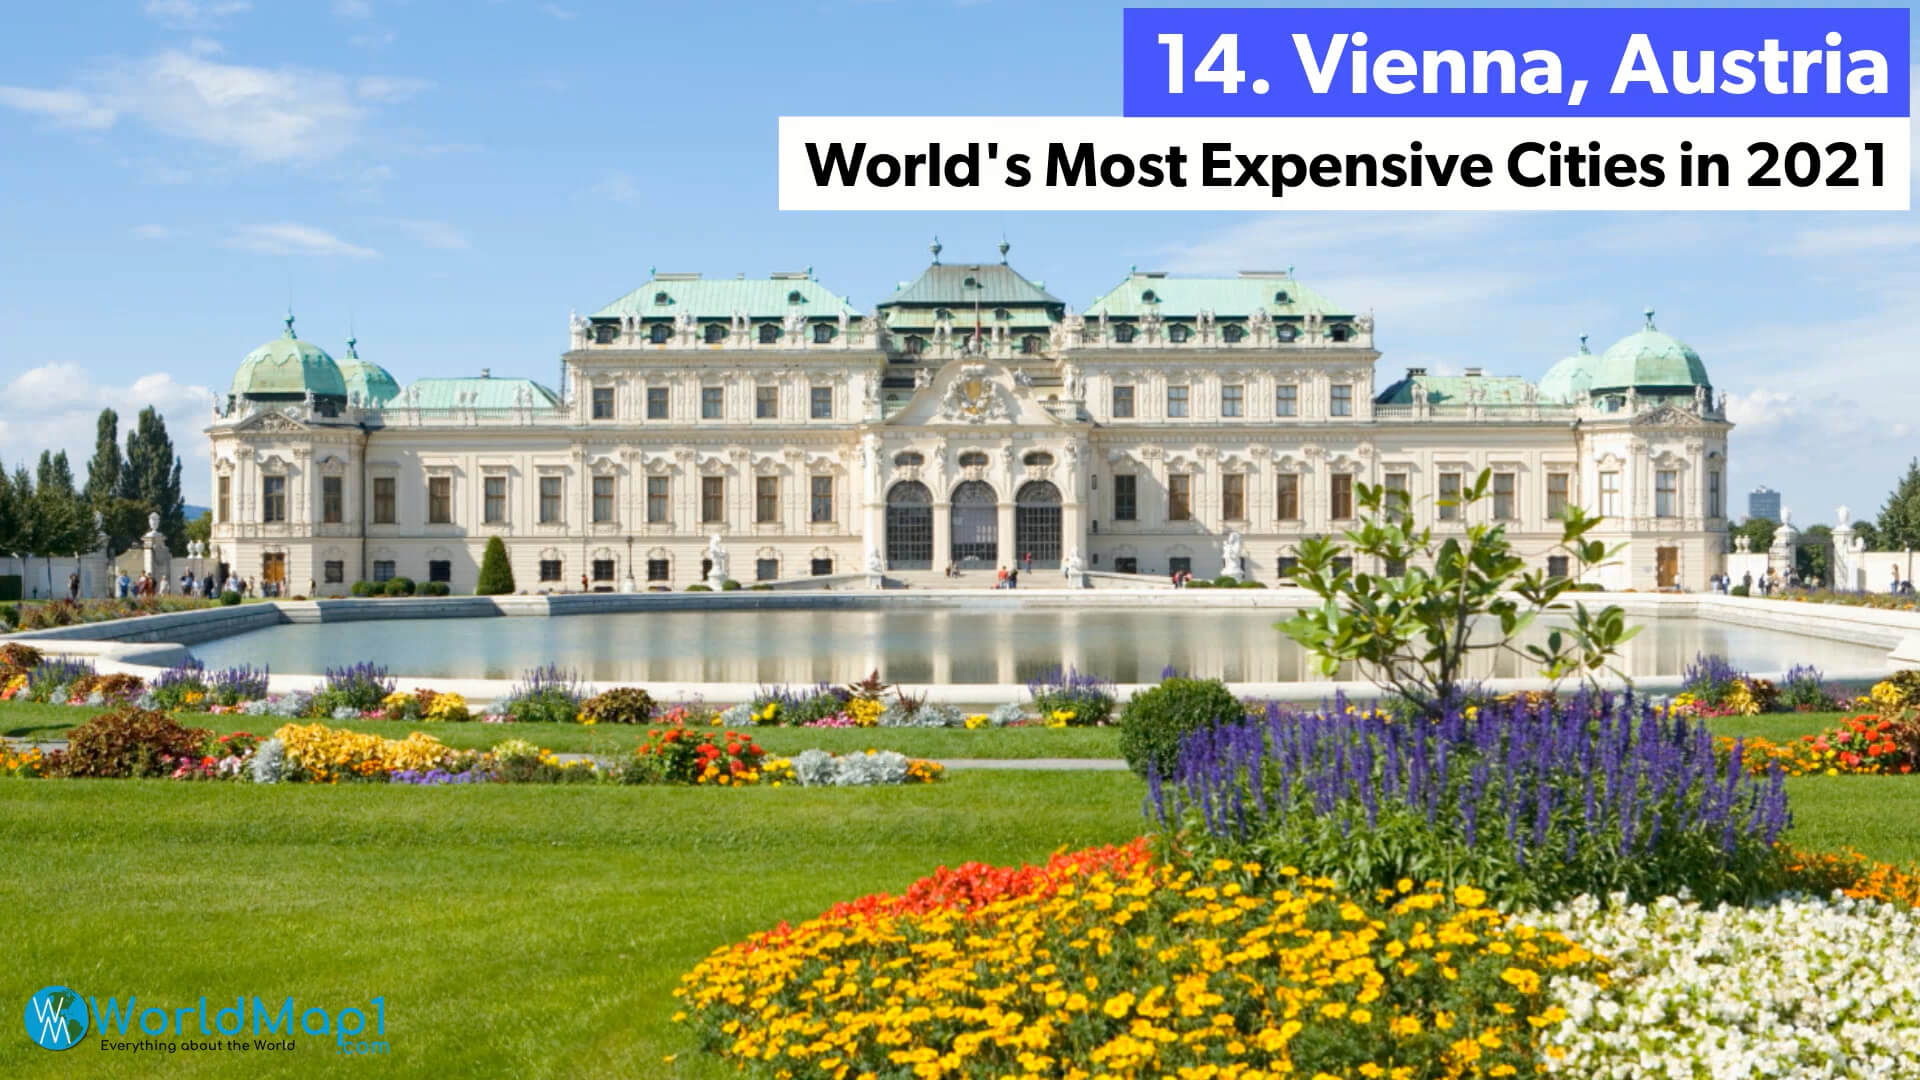 Les villes les plus chères du monde - Vienna, Autriche